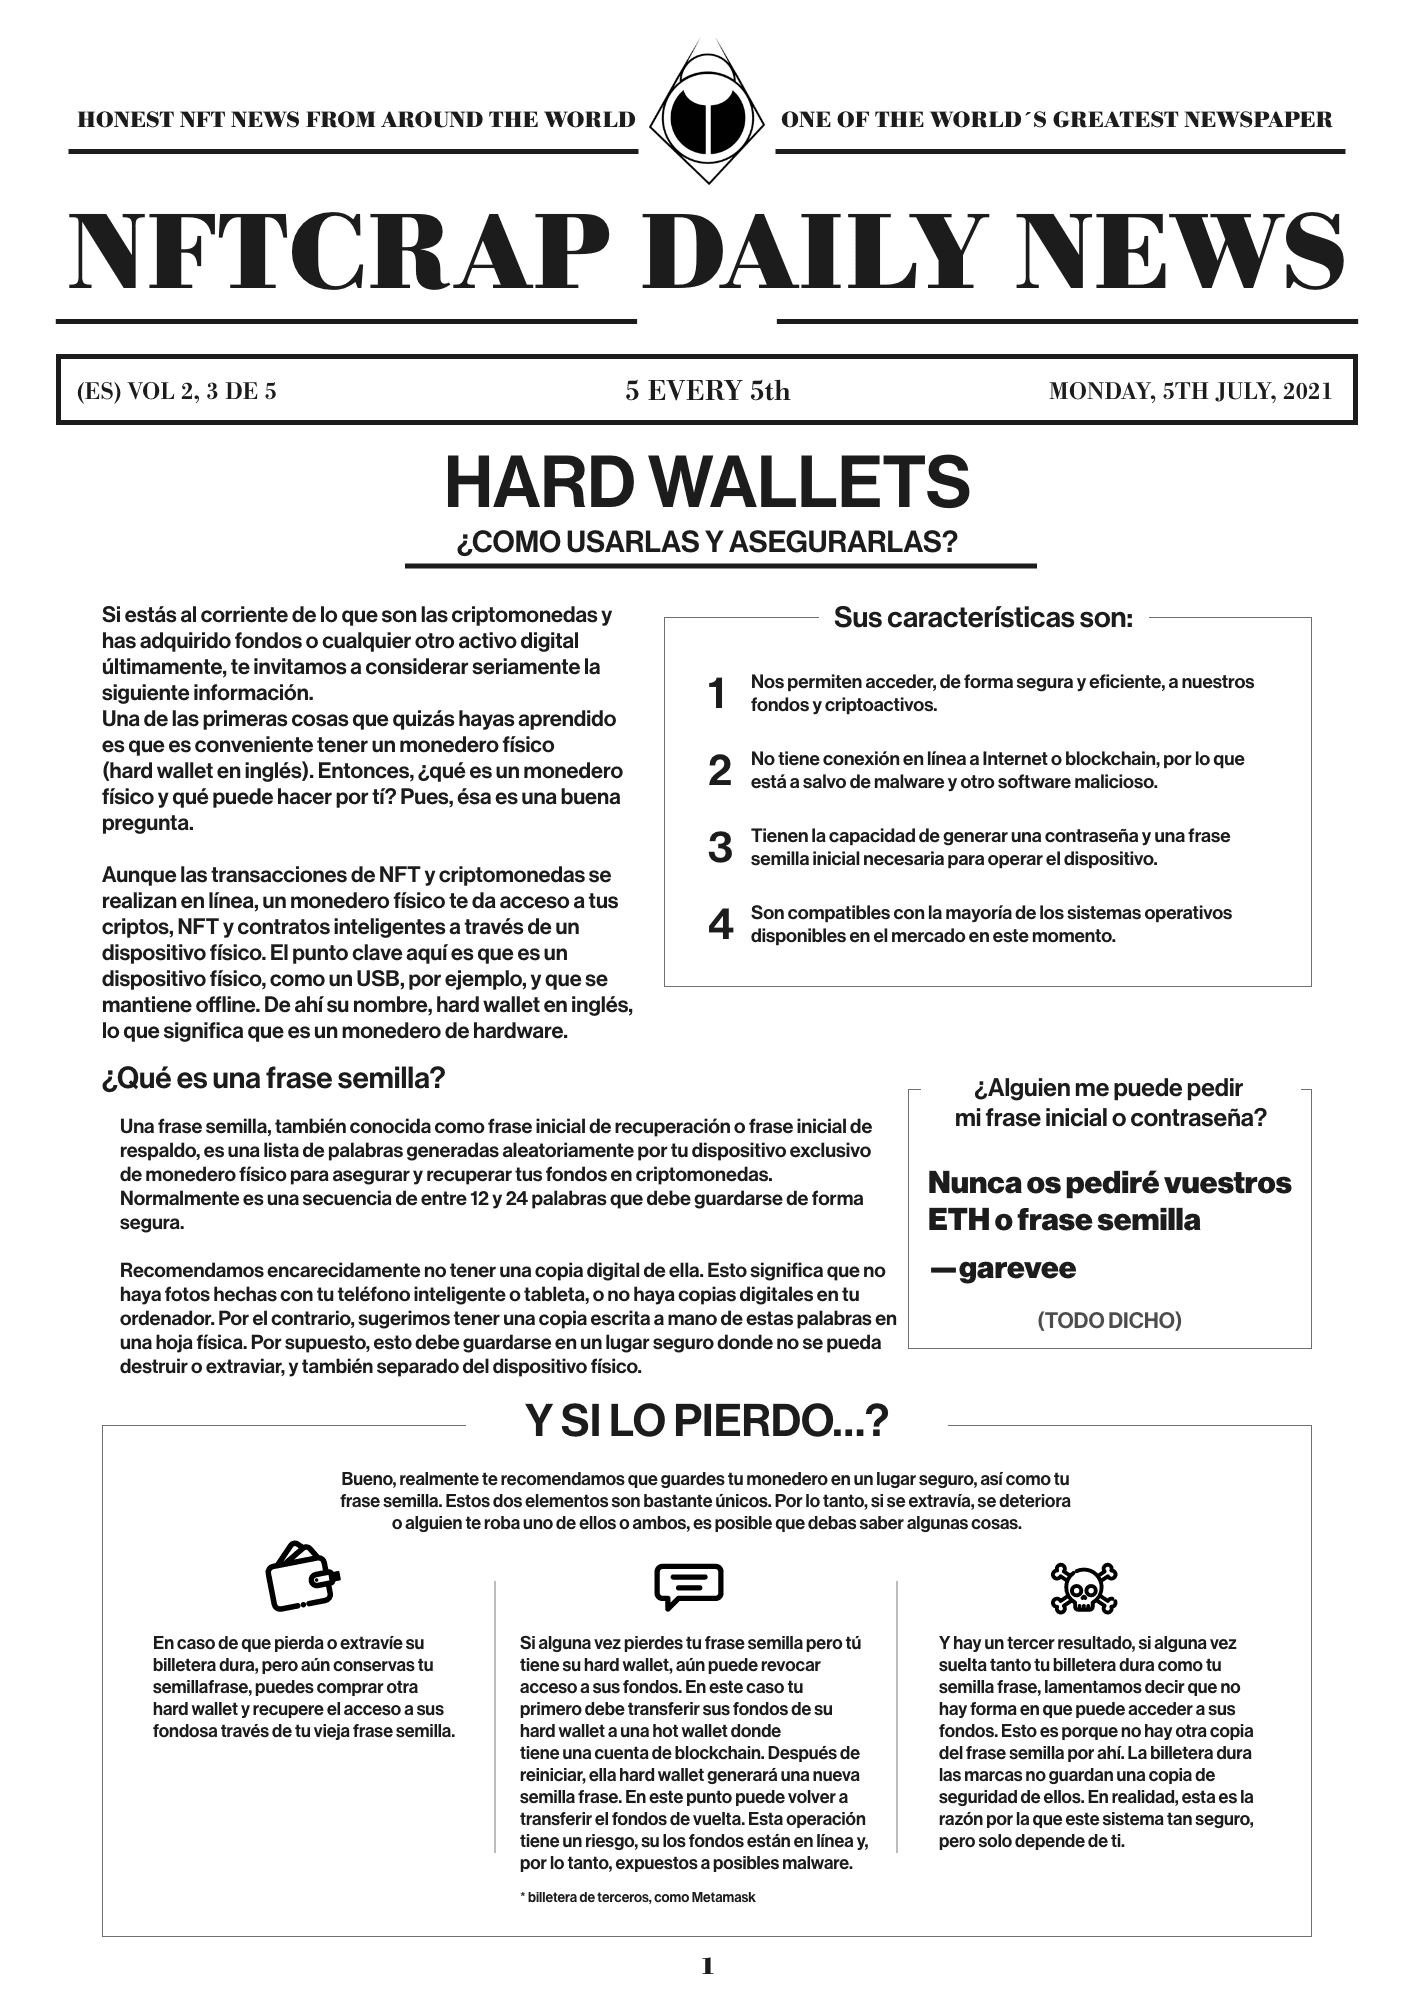 Hard Wallets (ES) #3/5